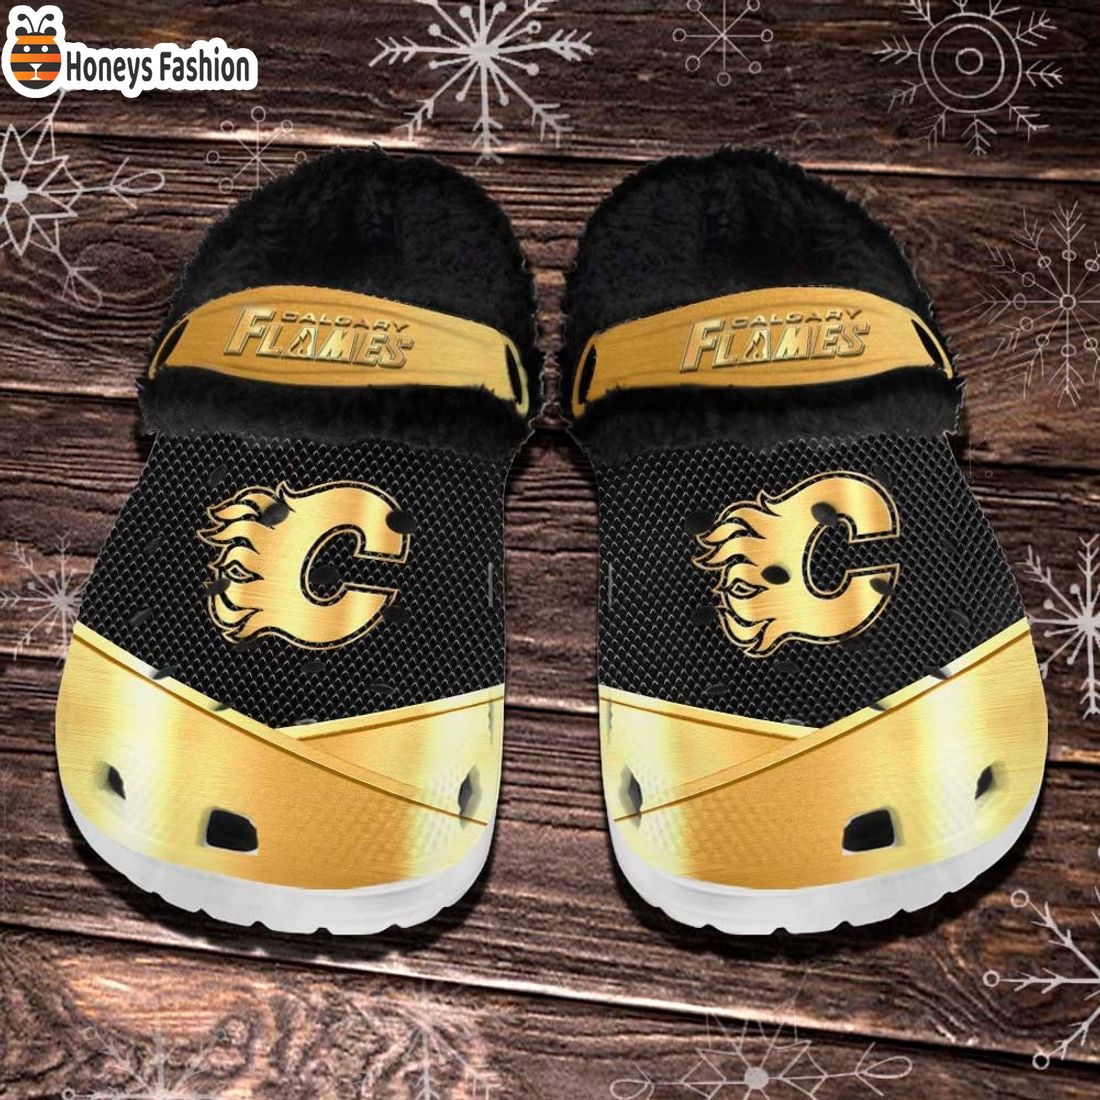 Calgary Flames NHL Fleece Crocs Clogs Shoes